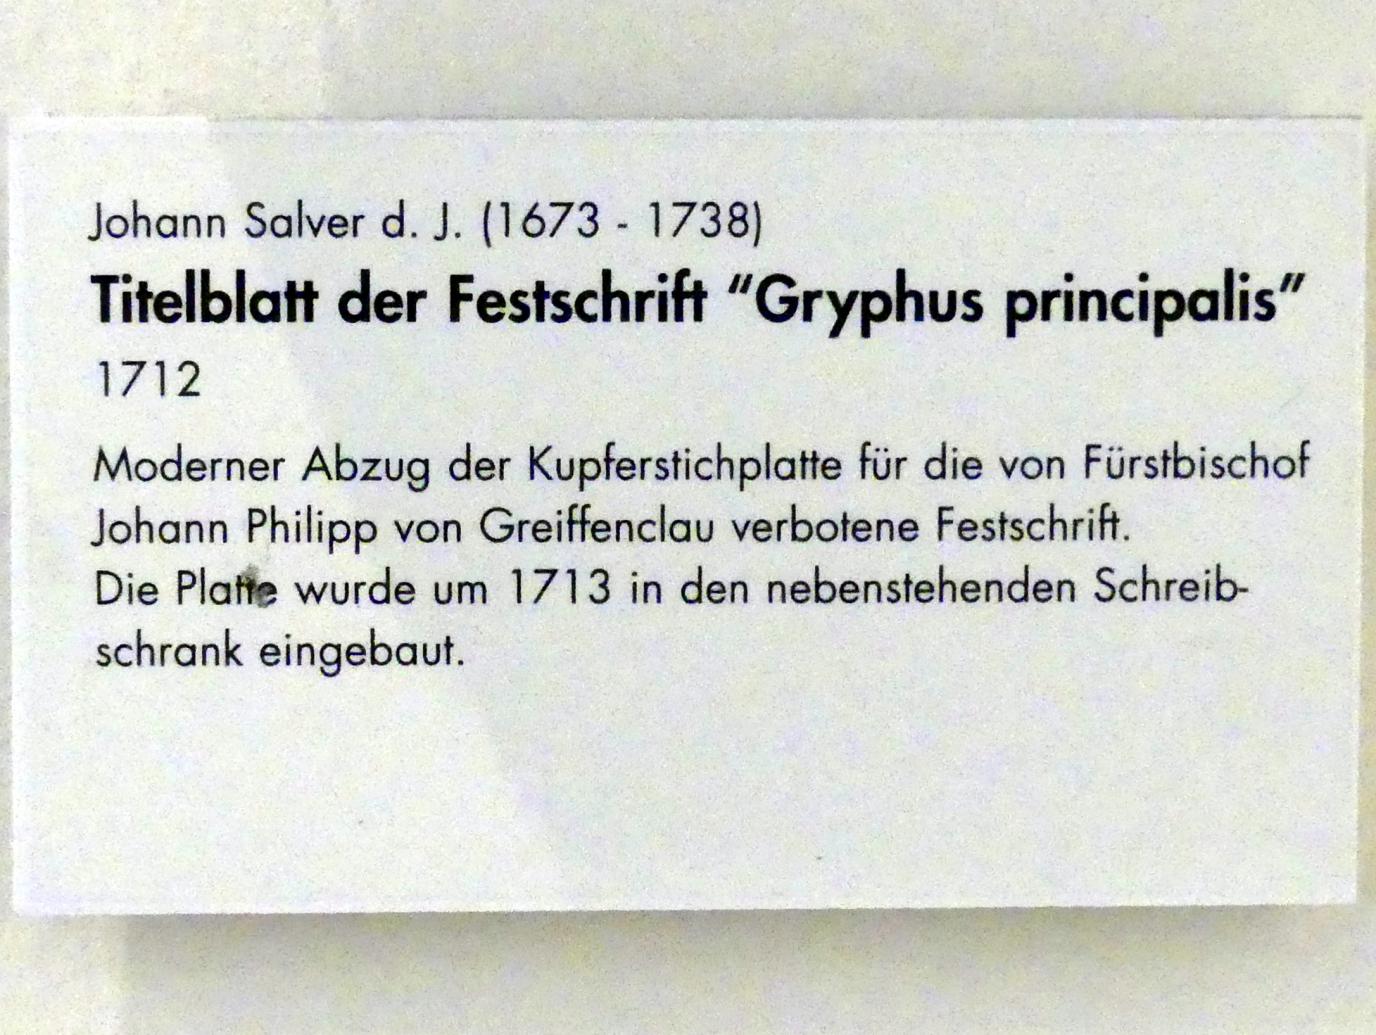 Johann Salver (1712), Titelblatt der Festschrift "Gryphus principalis", Würzburg, Museum für Franken (ehem. Mainfränkisches Museum), Barock-Saal, 1712, Bild 2/2